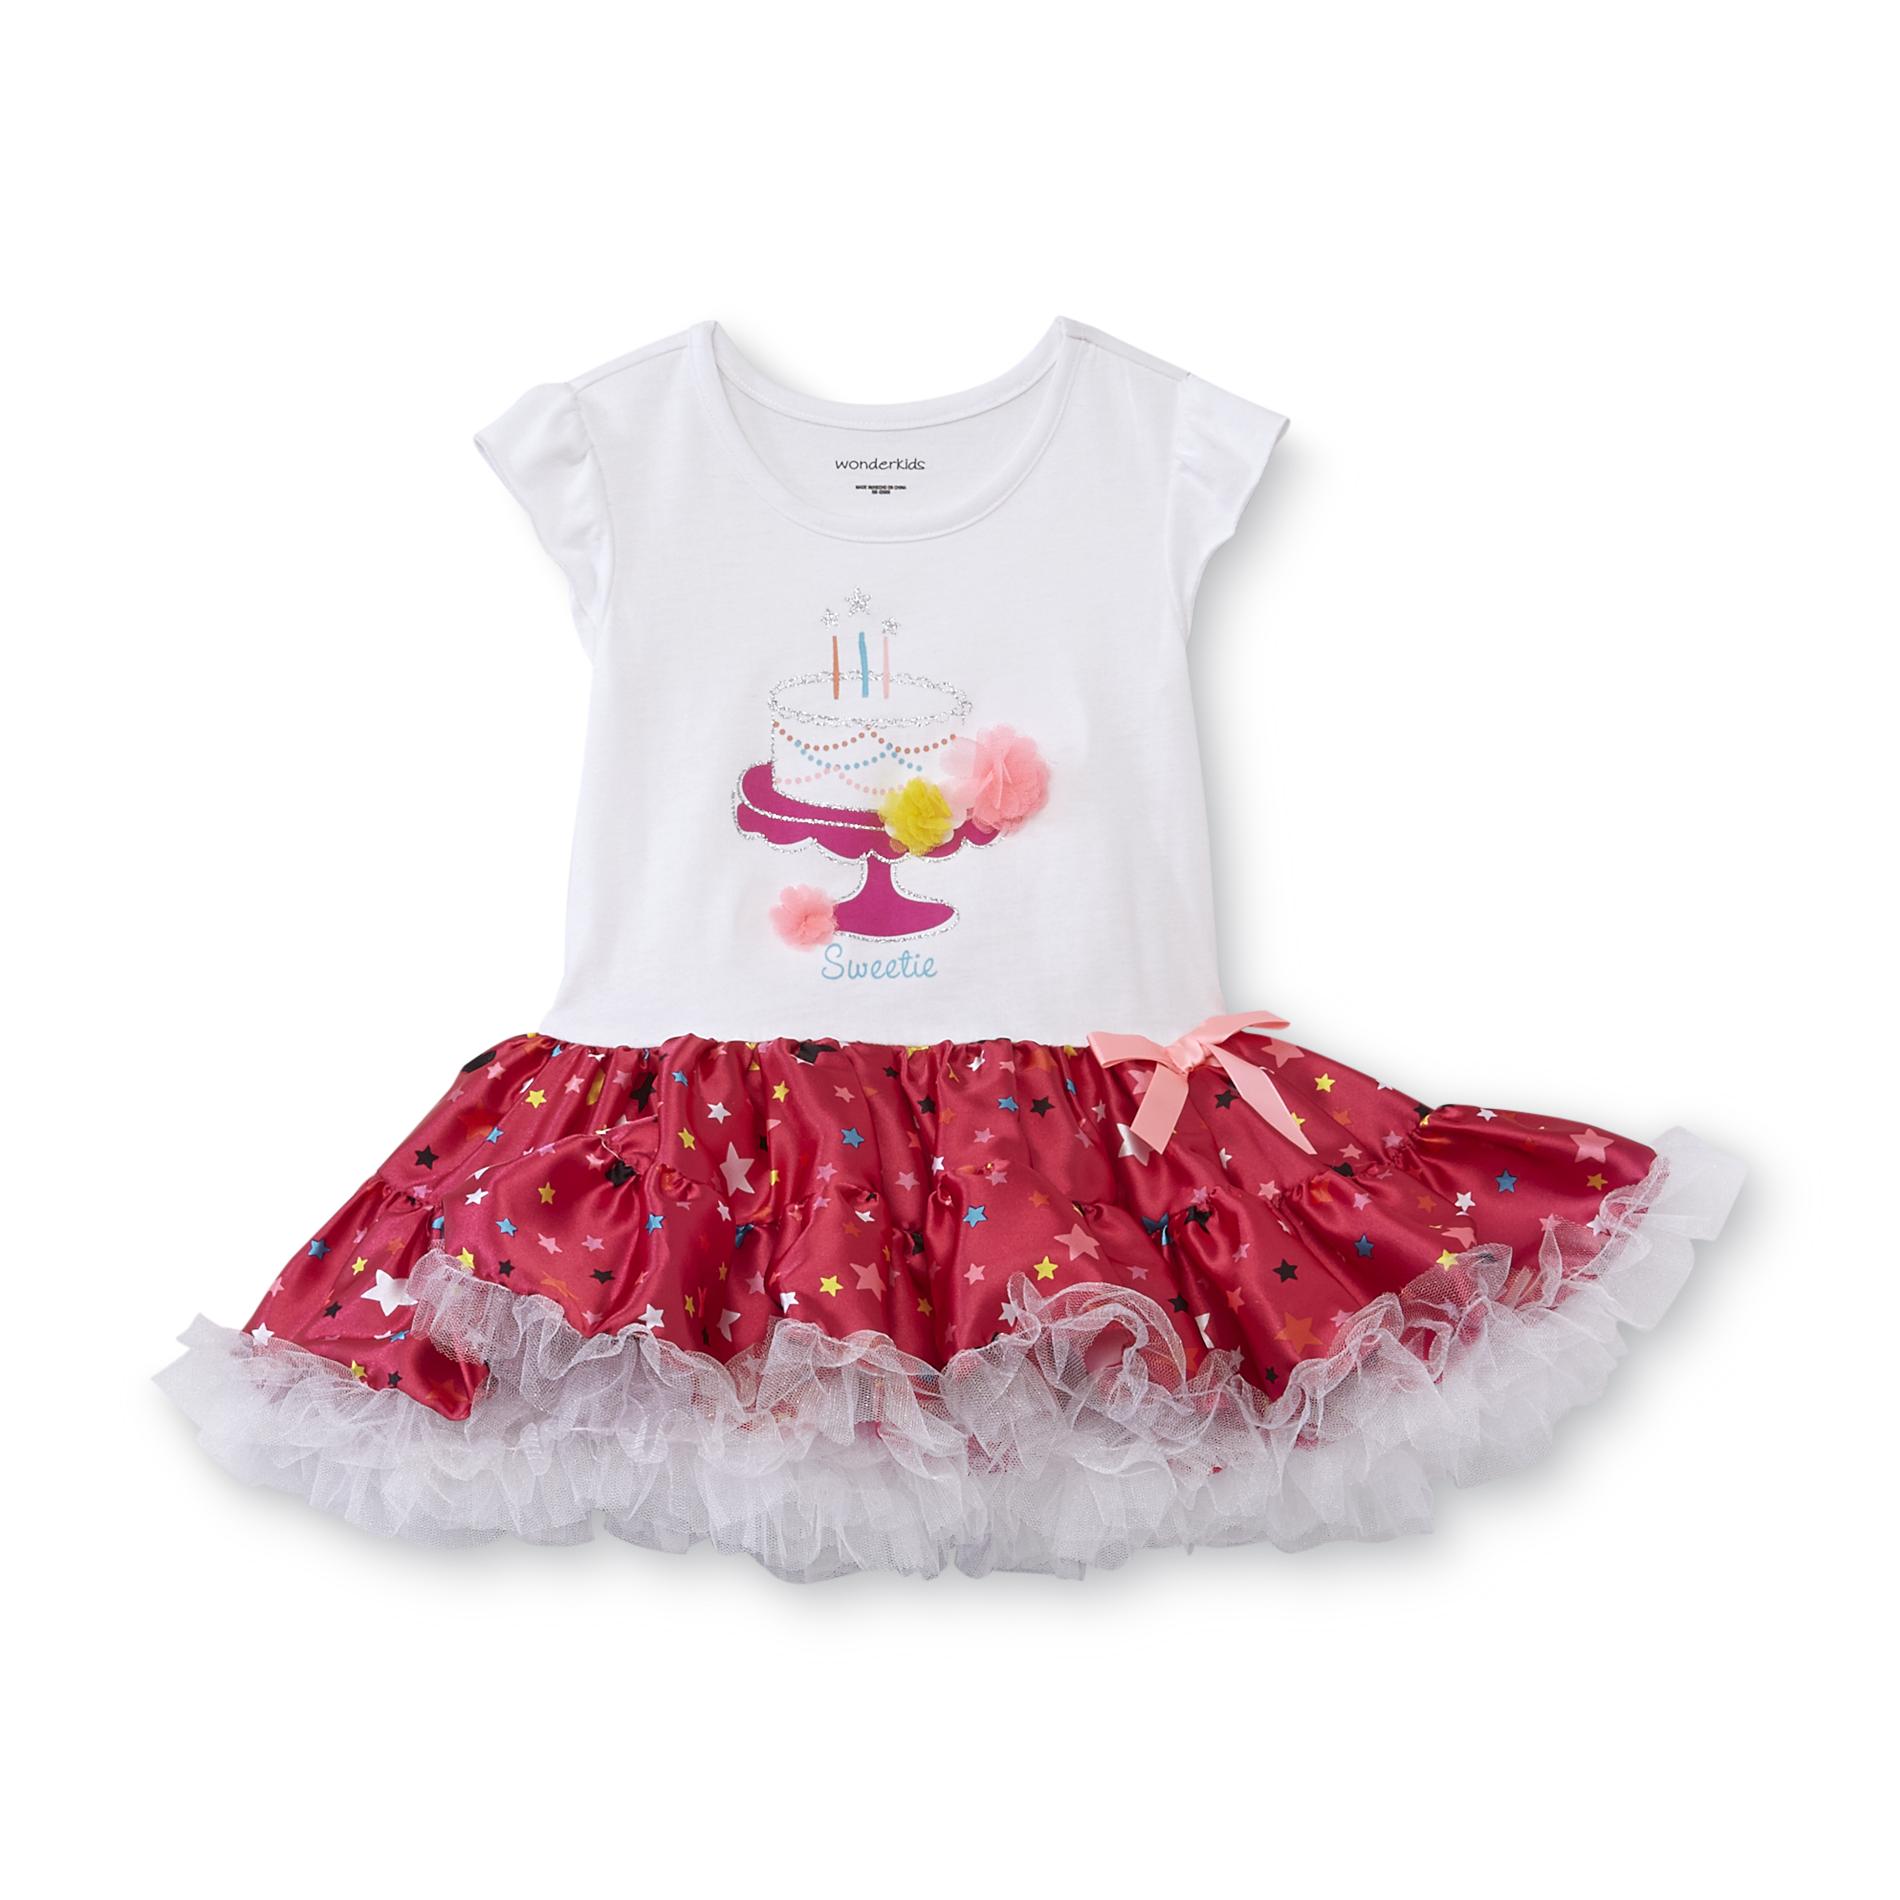 WonderKids Infant & Toddler Girl's Birthday Dress - Sweetie